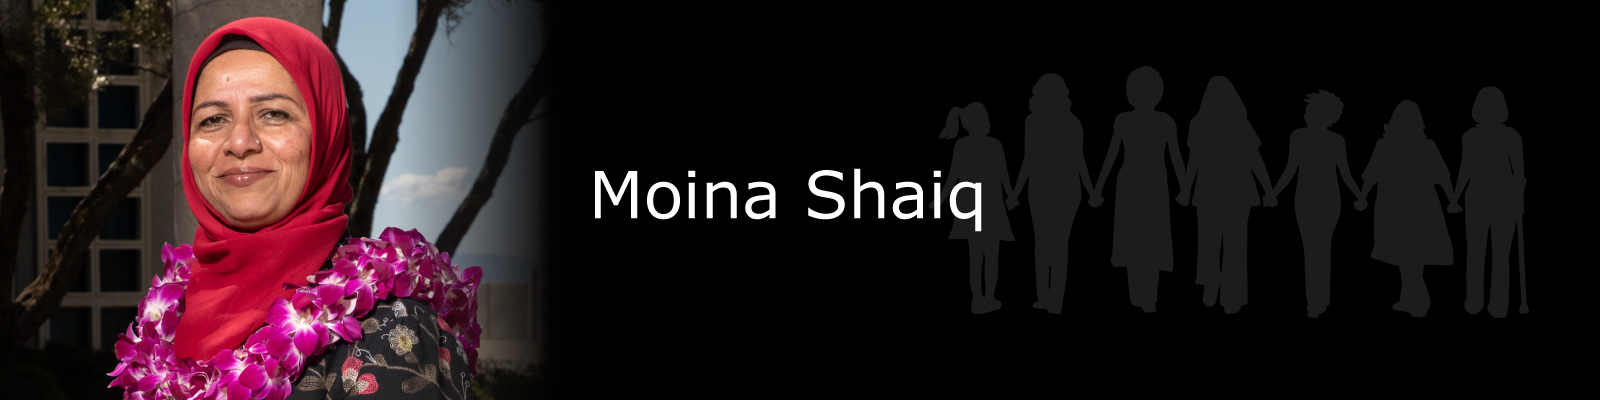 Photo of Moina Shaiq.